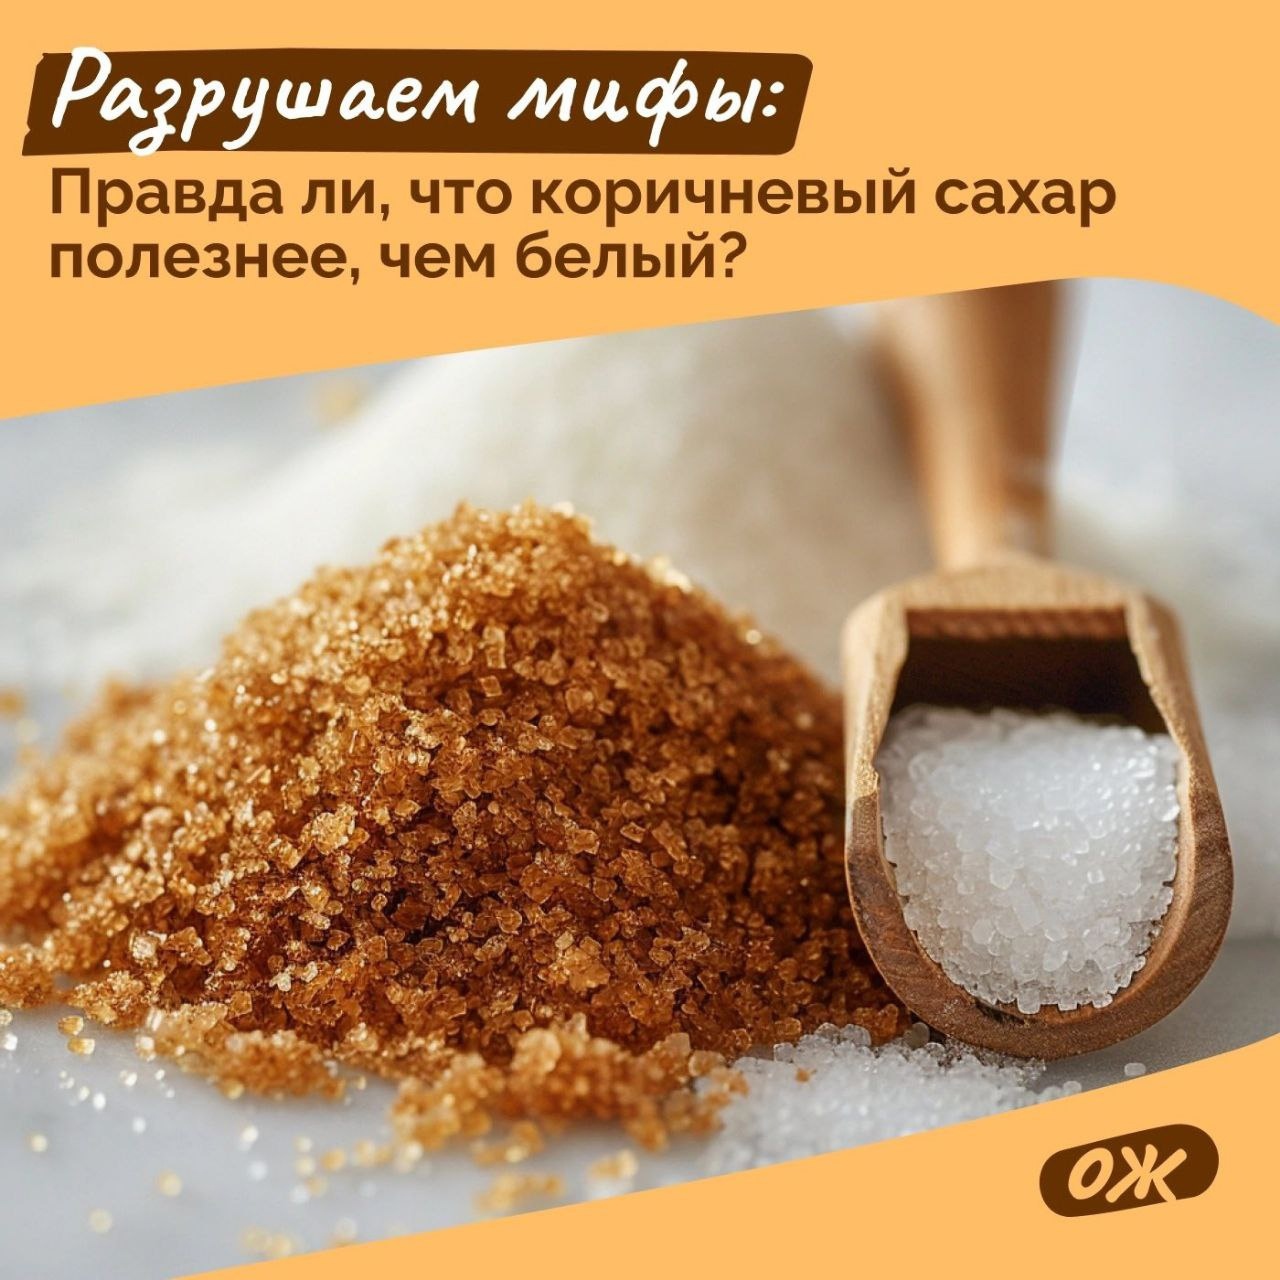 Разрушаем мифы: Правда ли, что коричневый сахар полезнее, чем белый?